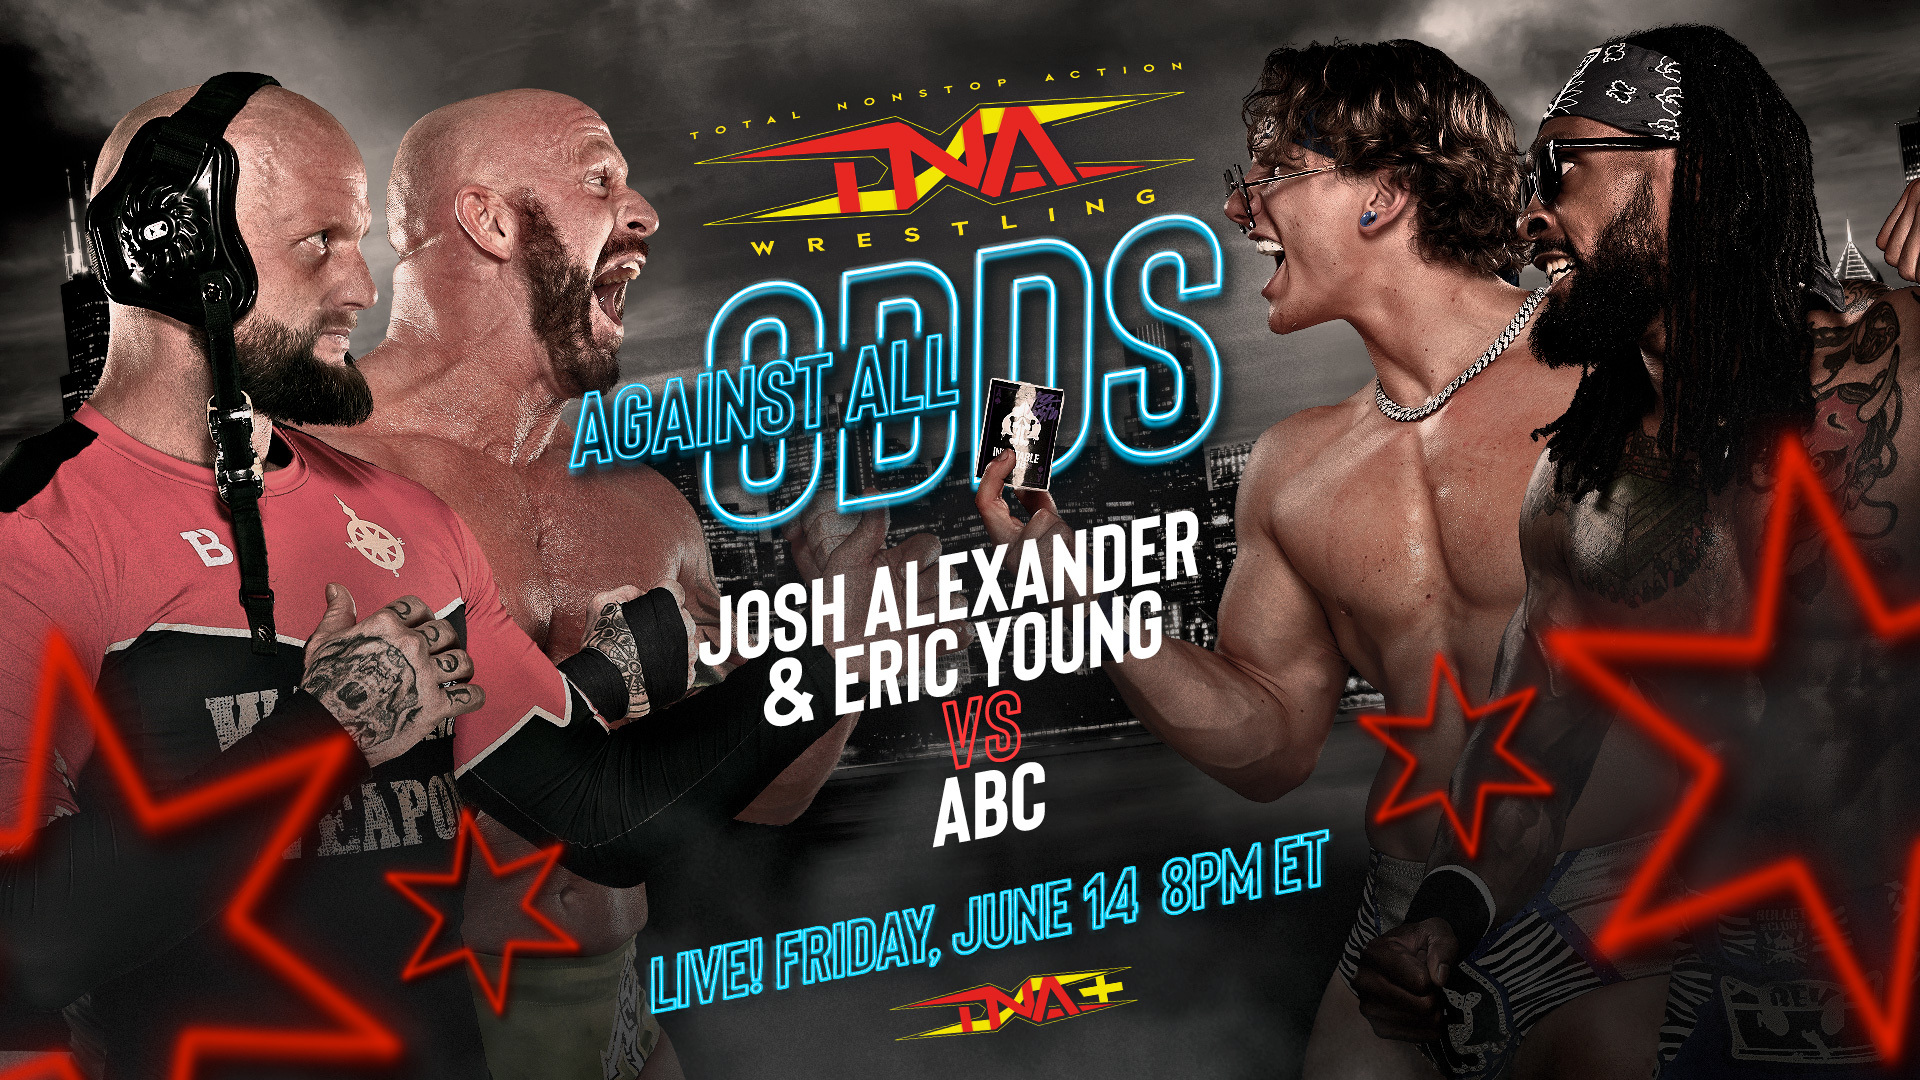 Young & Alexander vs. ABC Set for TNA Against All Odds LIVE June 14 on TNA+! – TNA Wrestling